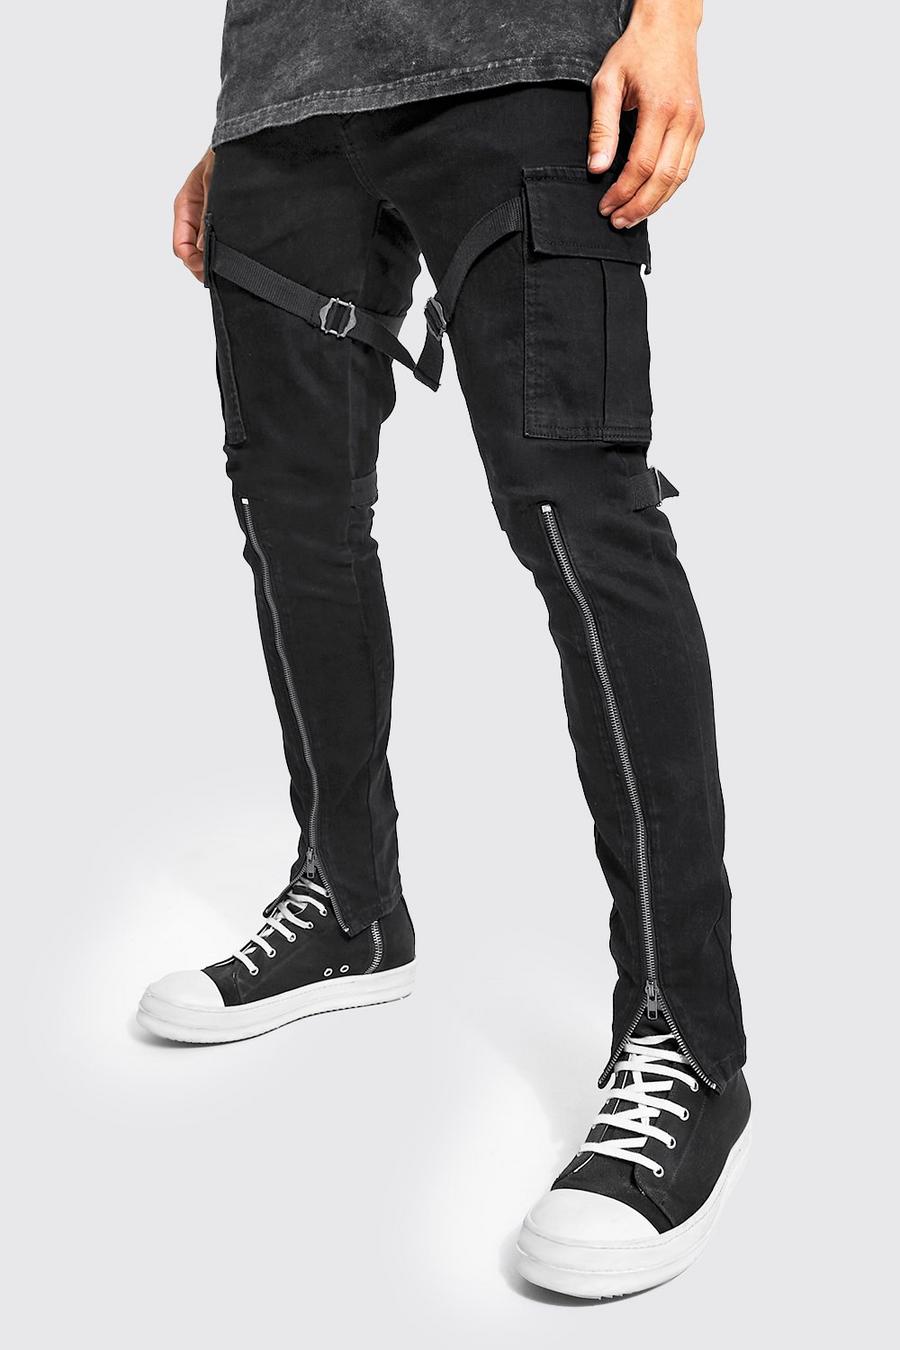 שחור אמיתי סקיני ג'ינס דגמ"ח נמתח עם רוכסן ורצועה image number 1